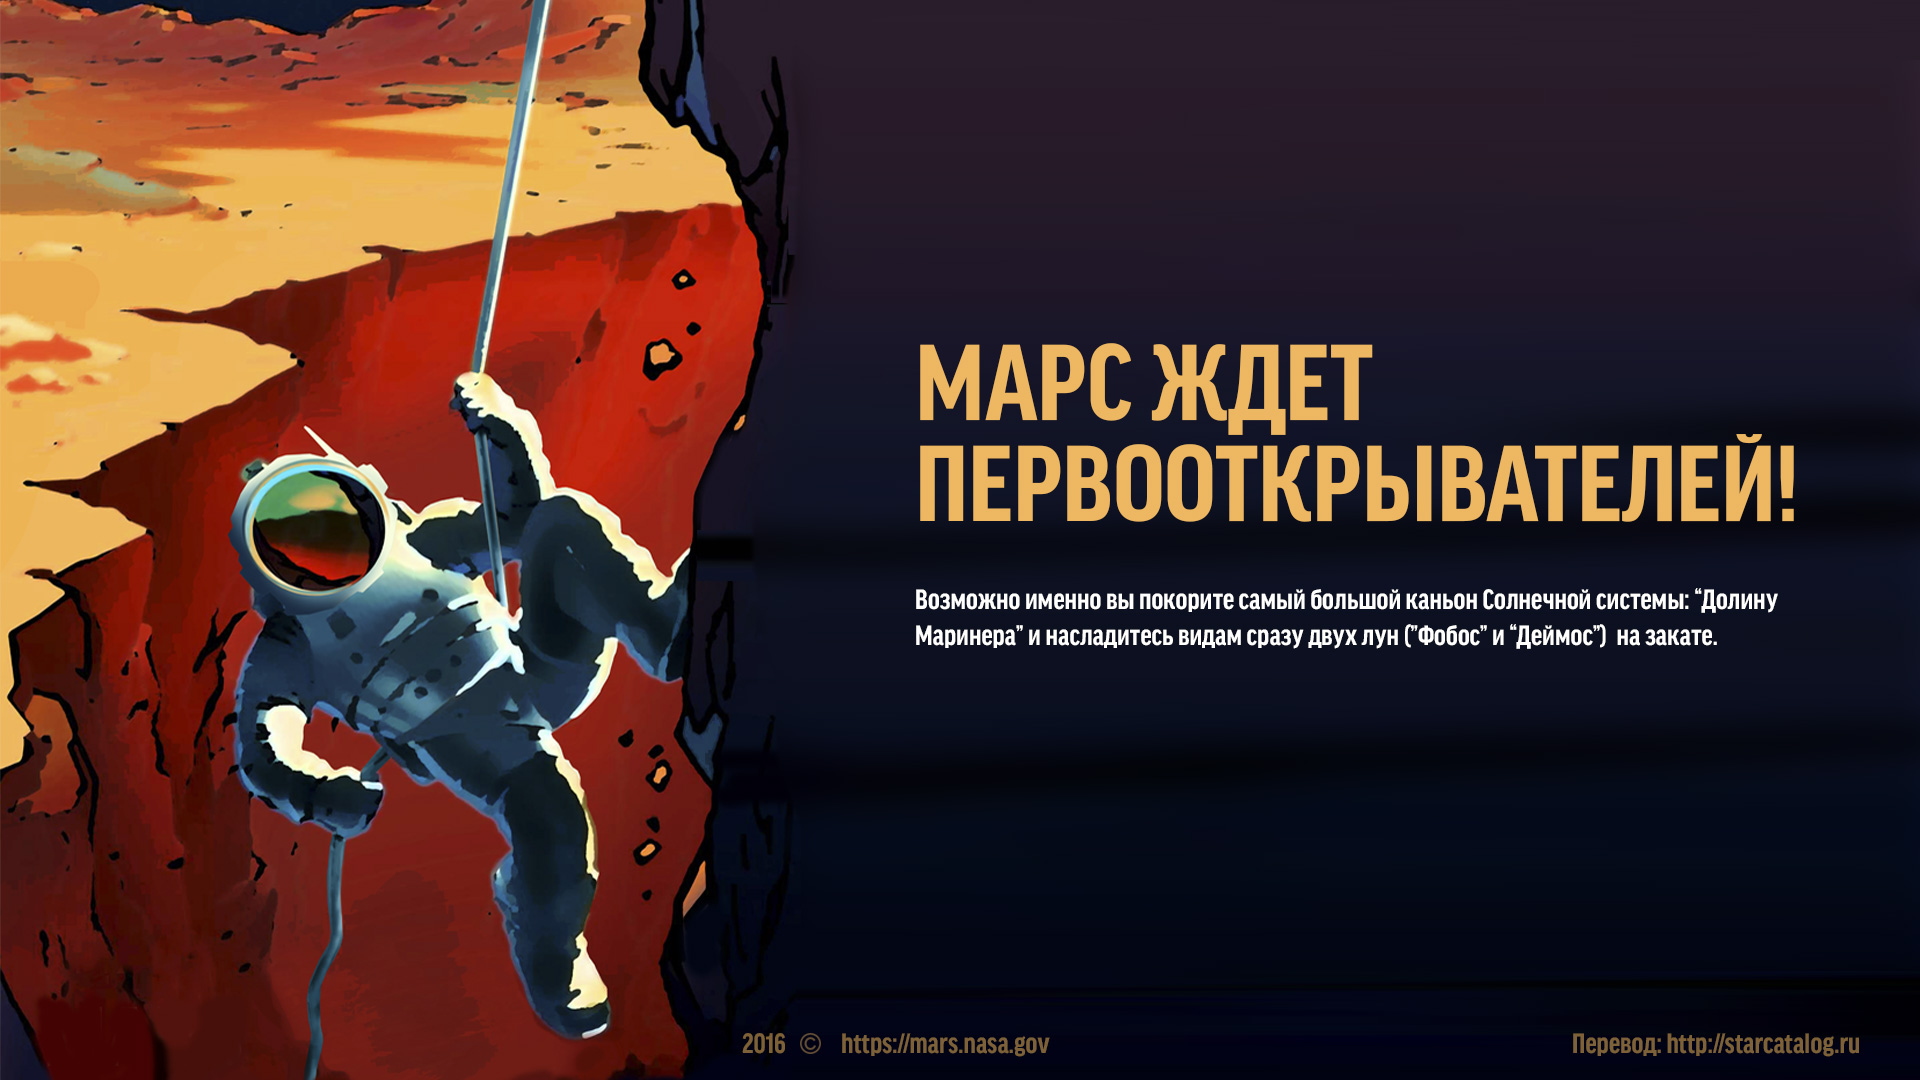 Плакаты NASA о Марсе с русским переводом